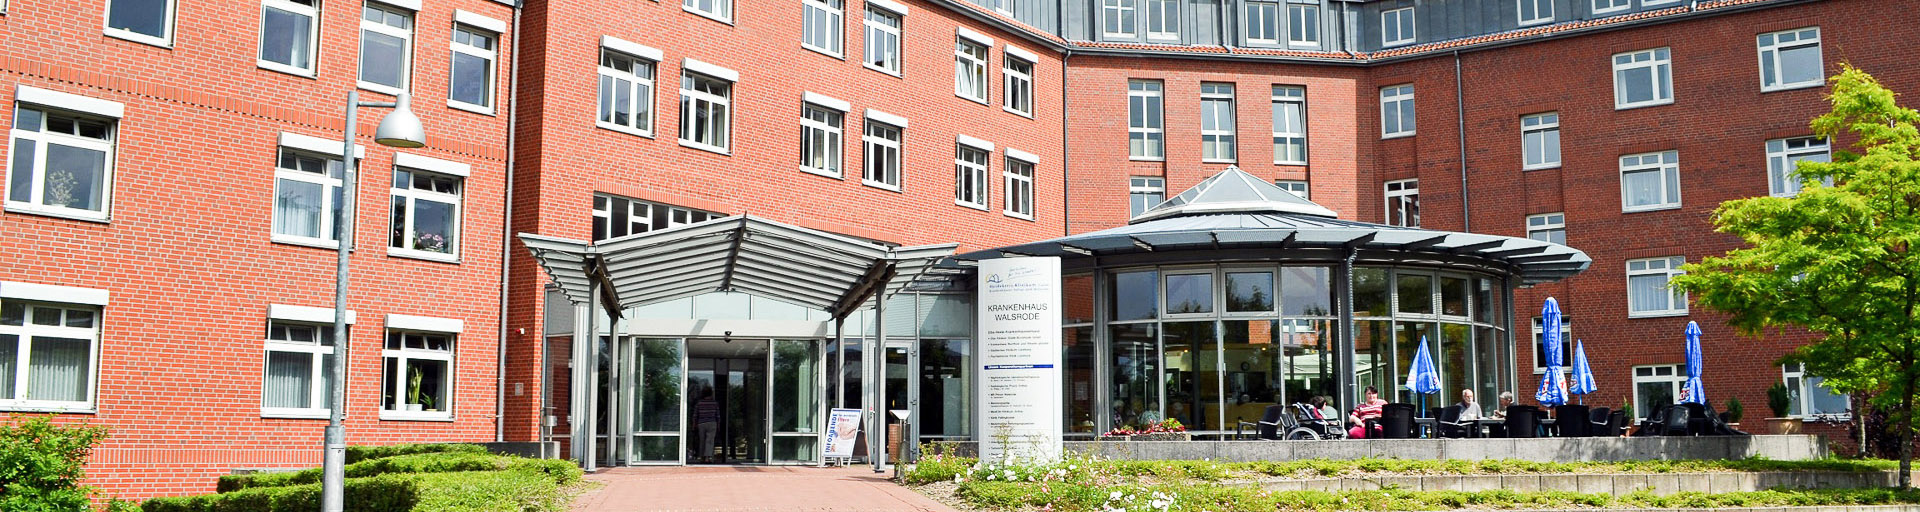 Eingangsbereich des Heidekreis Klinikums in Walsrode